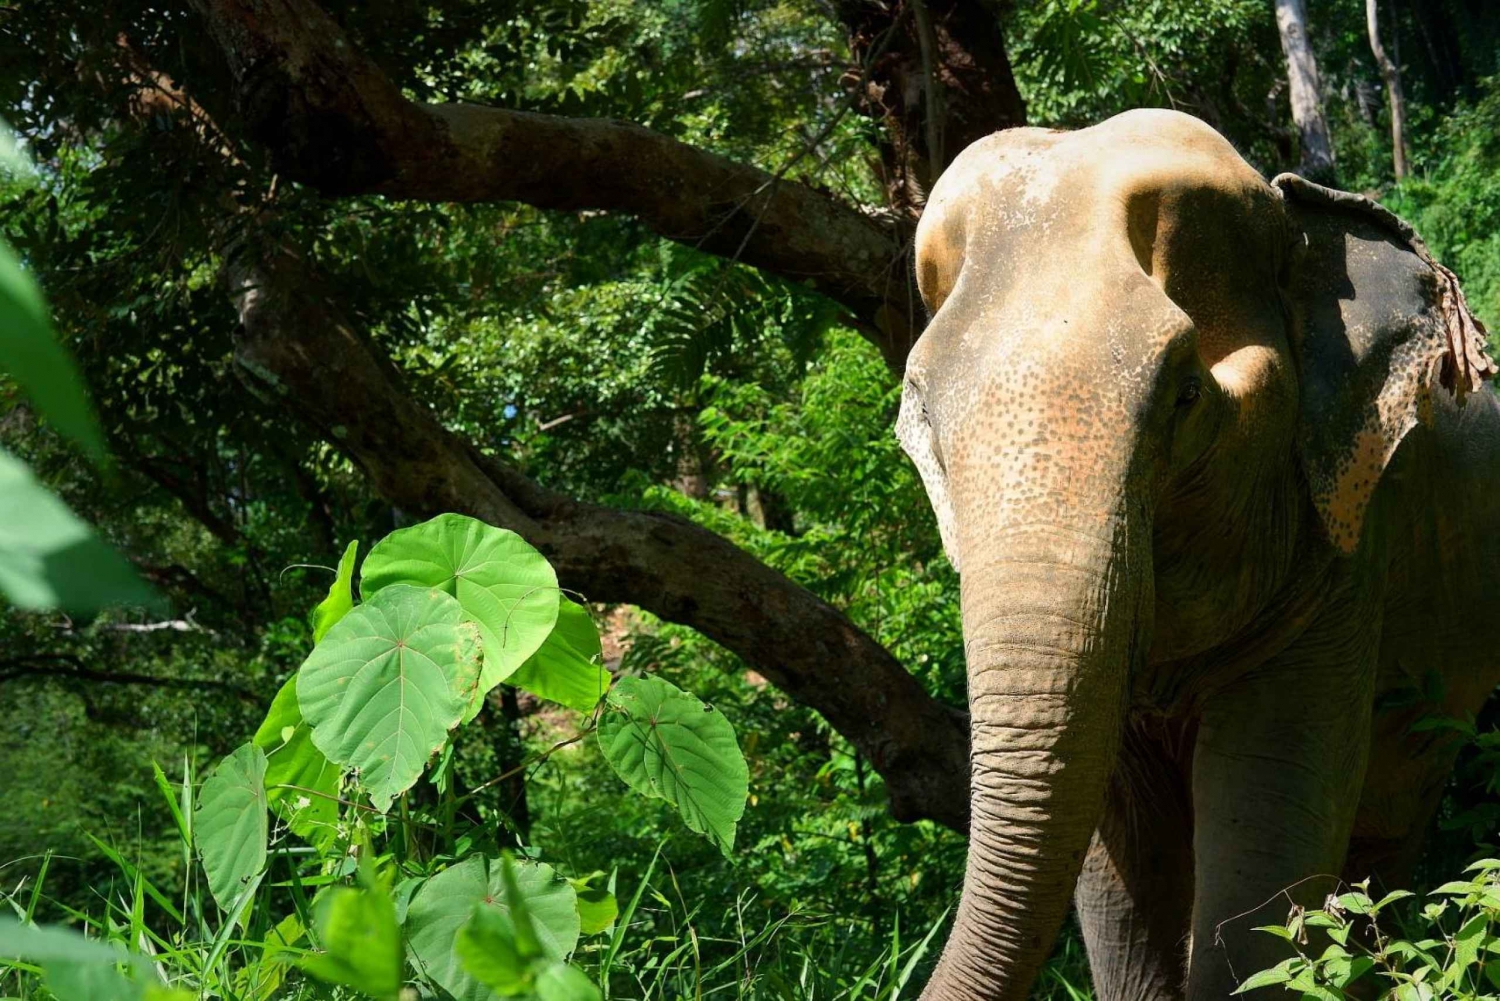 Z Phuket: Interaktywna wędrówka i wycieczka na słoniach